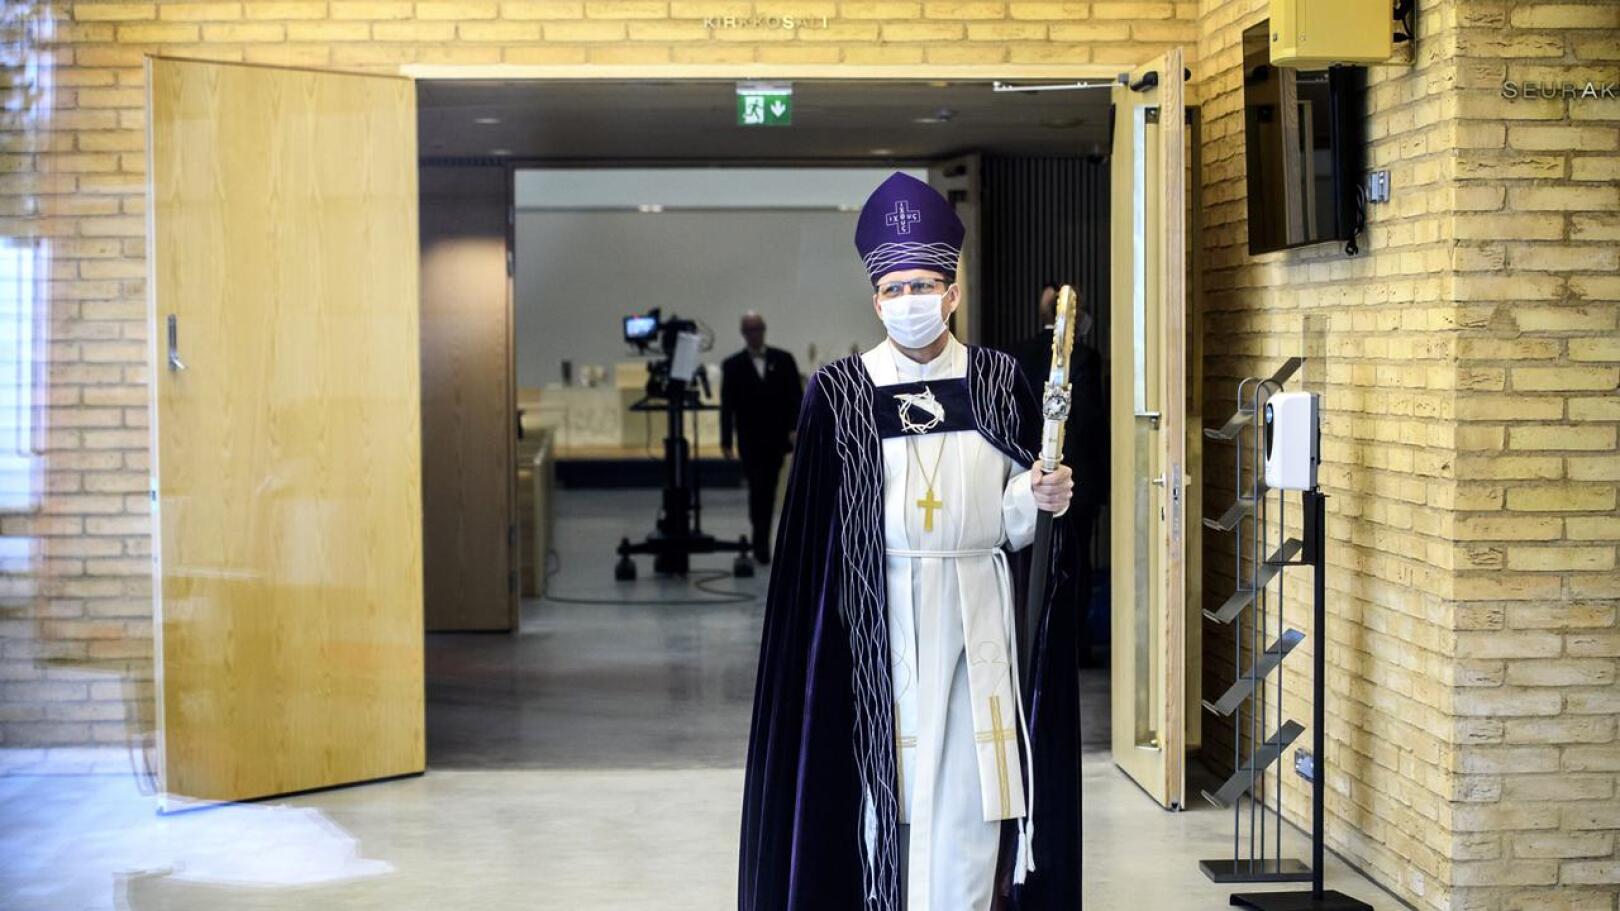 Oulun hiippakunnan piispa Jukka Keskitalo oli toimittamassa Ylivieskan uuden kirkon vihkiäismessua pääsiäissunnuntaina.